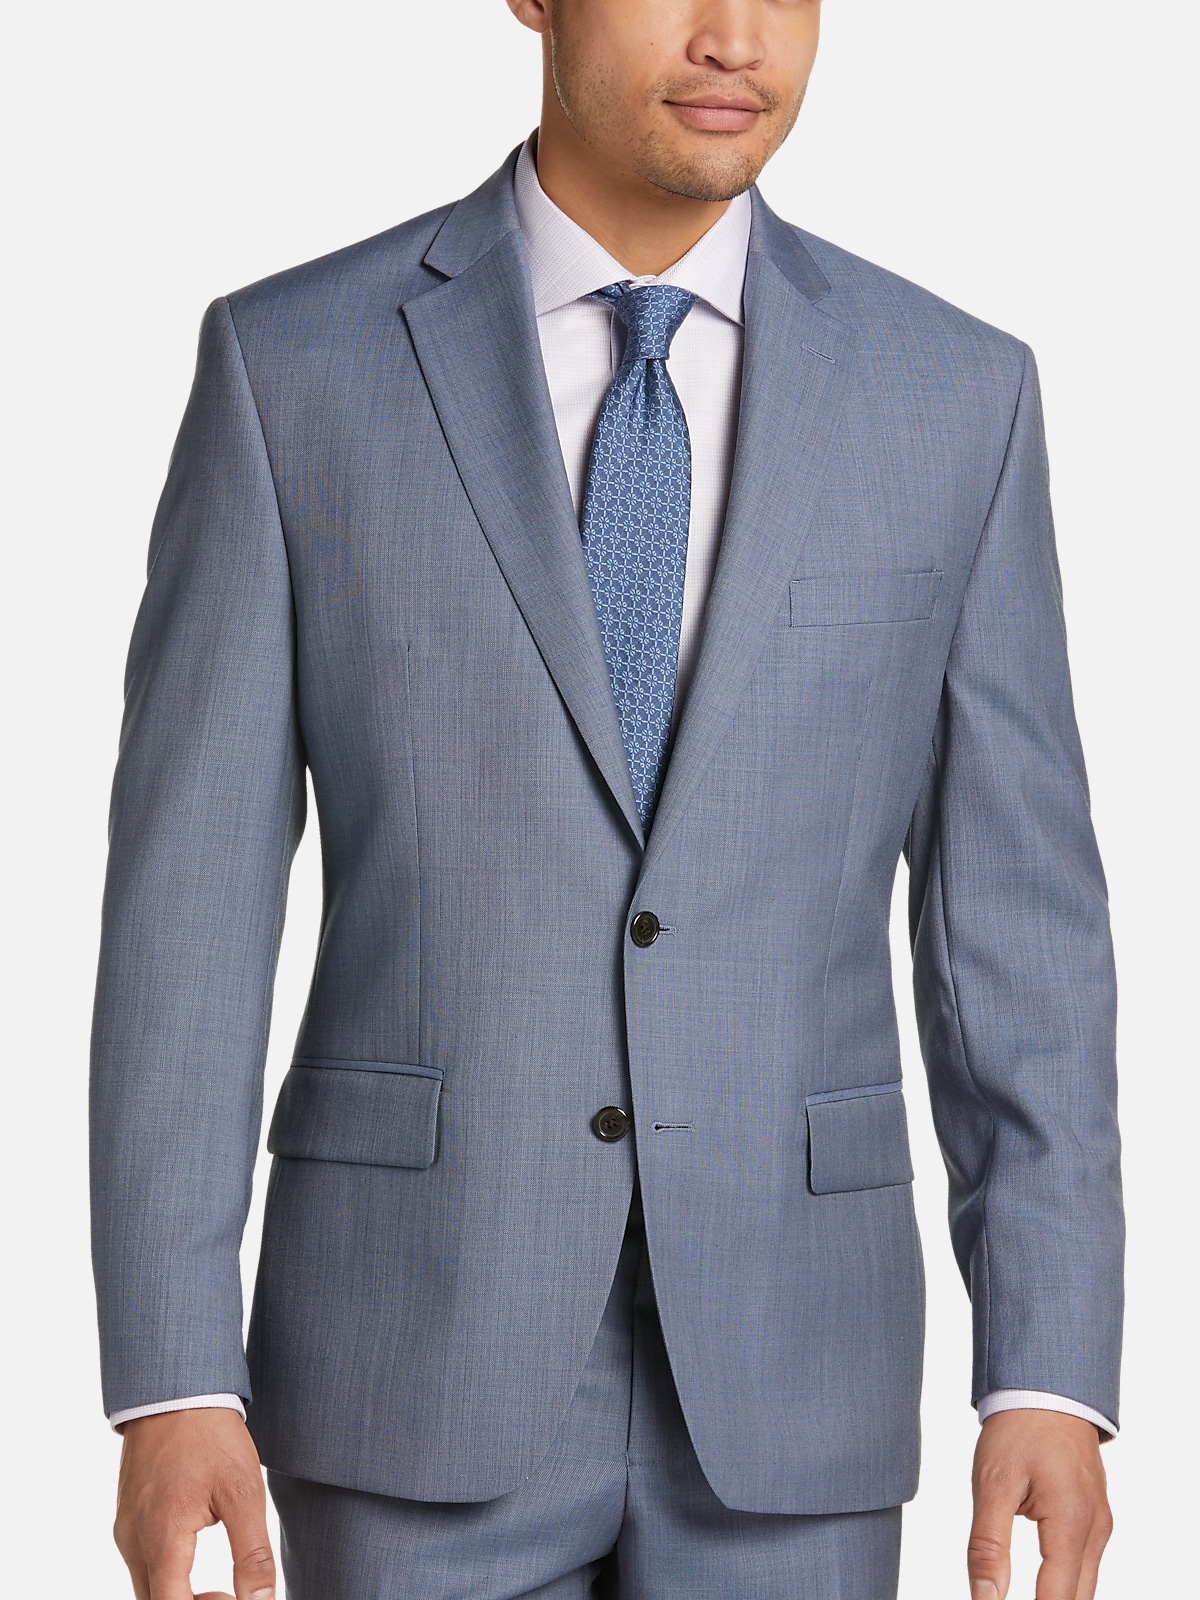 Lauren By Ralph Lauren Classic Fit Suit | All Clearance $39.99| Men's ...